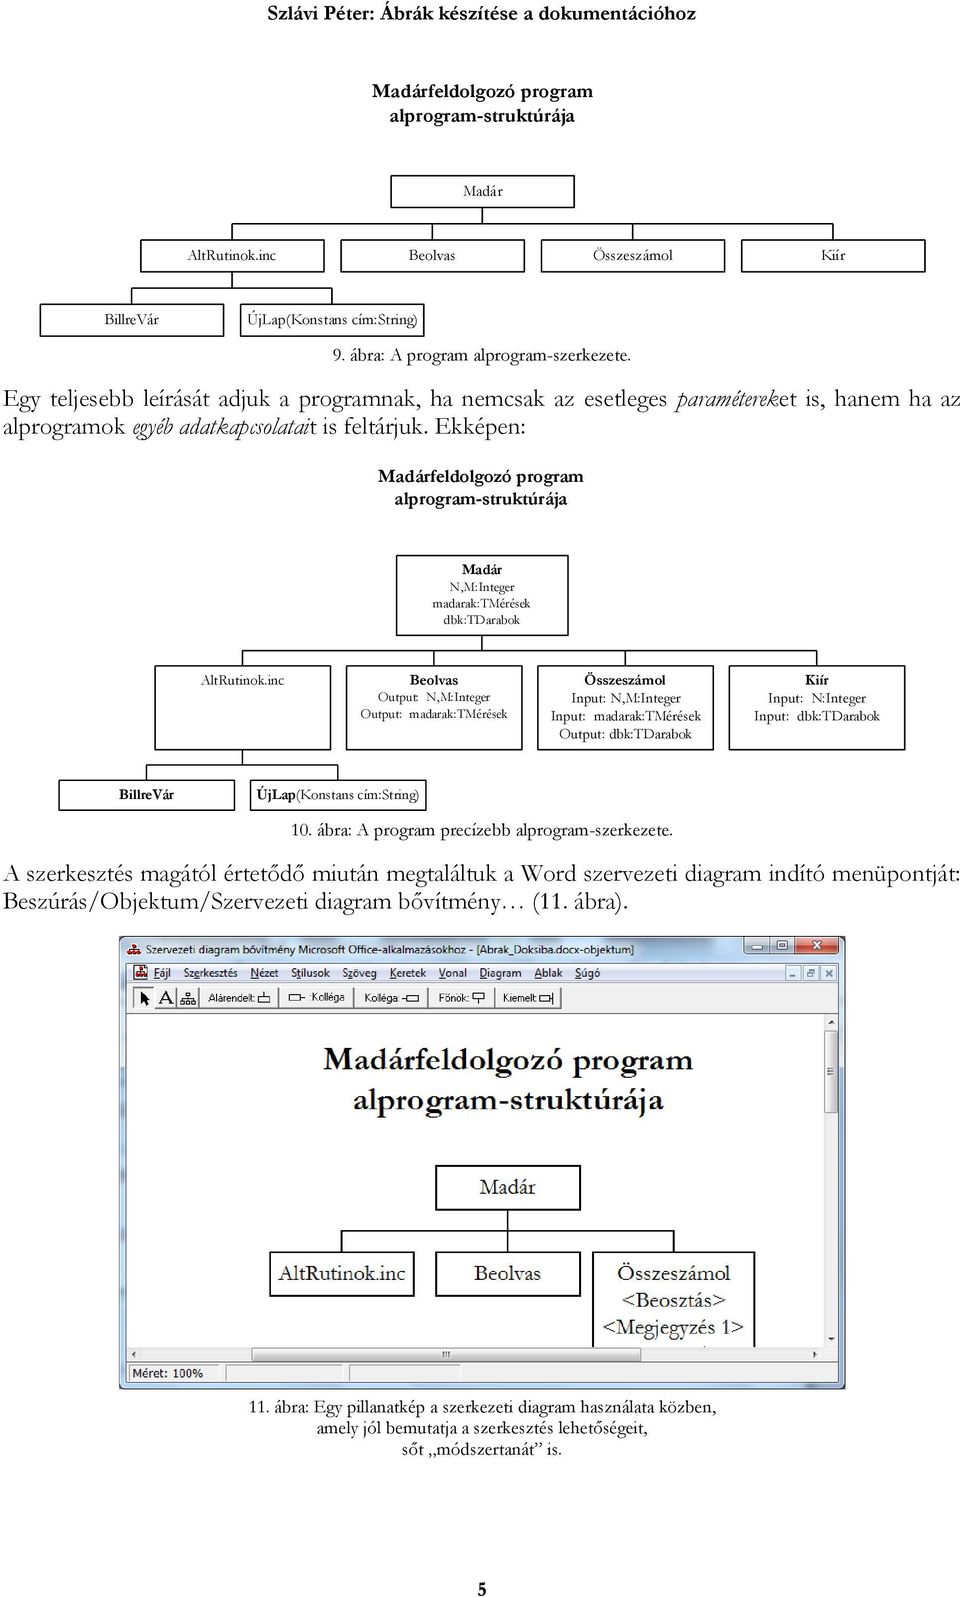 Ekképen: Madárfeldolgozó program alprogram-struktúrája Madár N,M:Integer madarak:tmérések dbk:tdarabok AltRutinok.